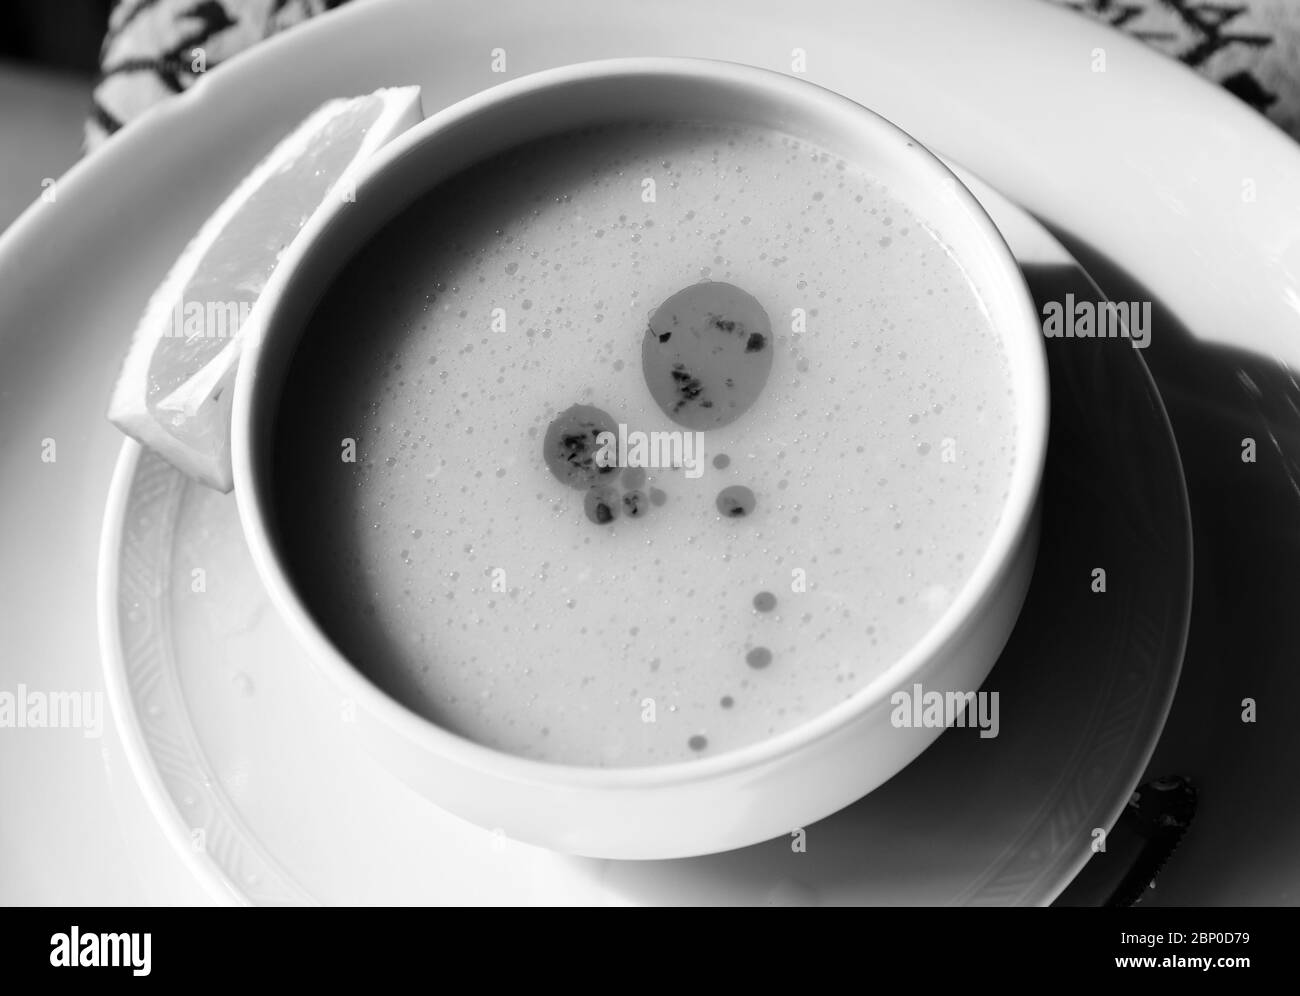 Zuppa tradizionale turca con purè di lenticchie (Turk Mercimek Çorbasi) su recipiente in ceramica bianca e fetta di limone sul piatto. Immagine con toni in bianco e nero. Co. Alta Foto Stock